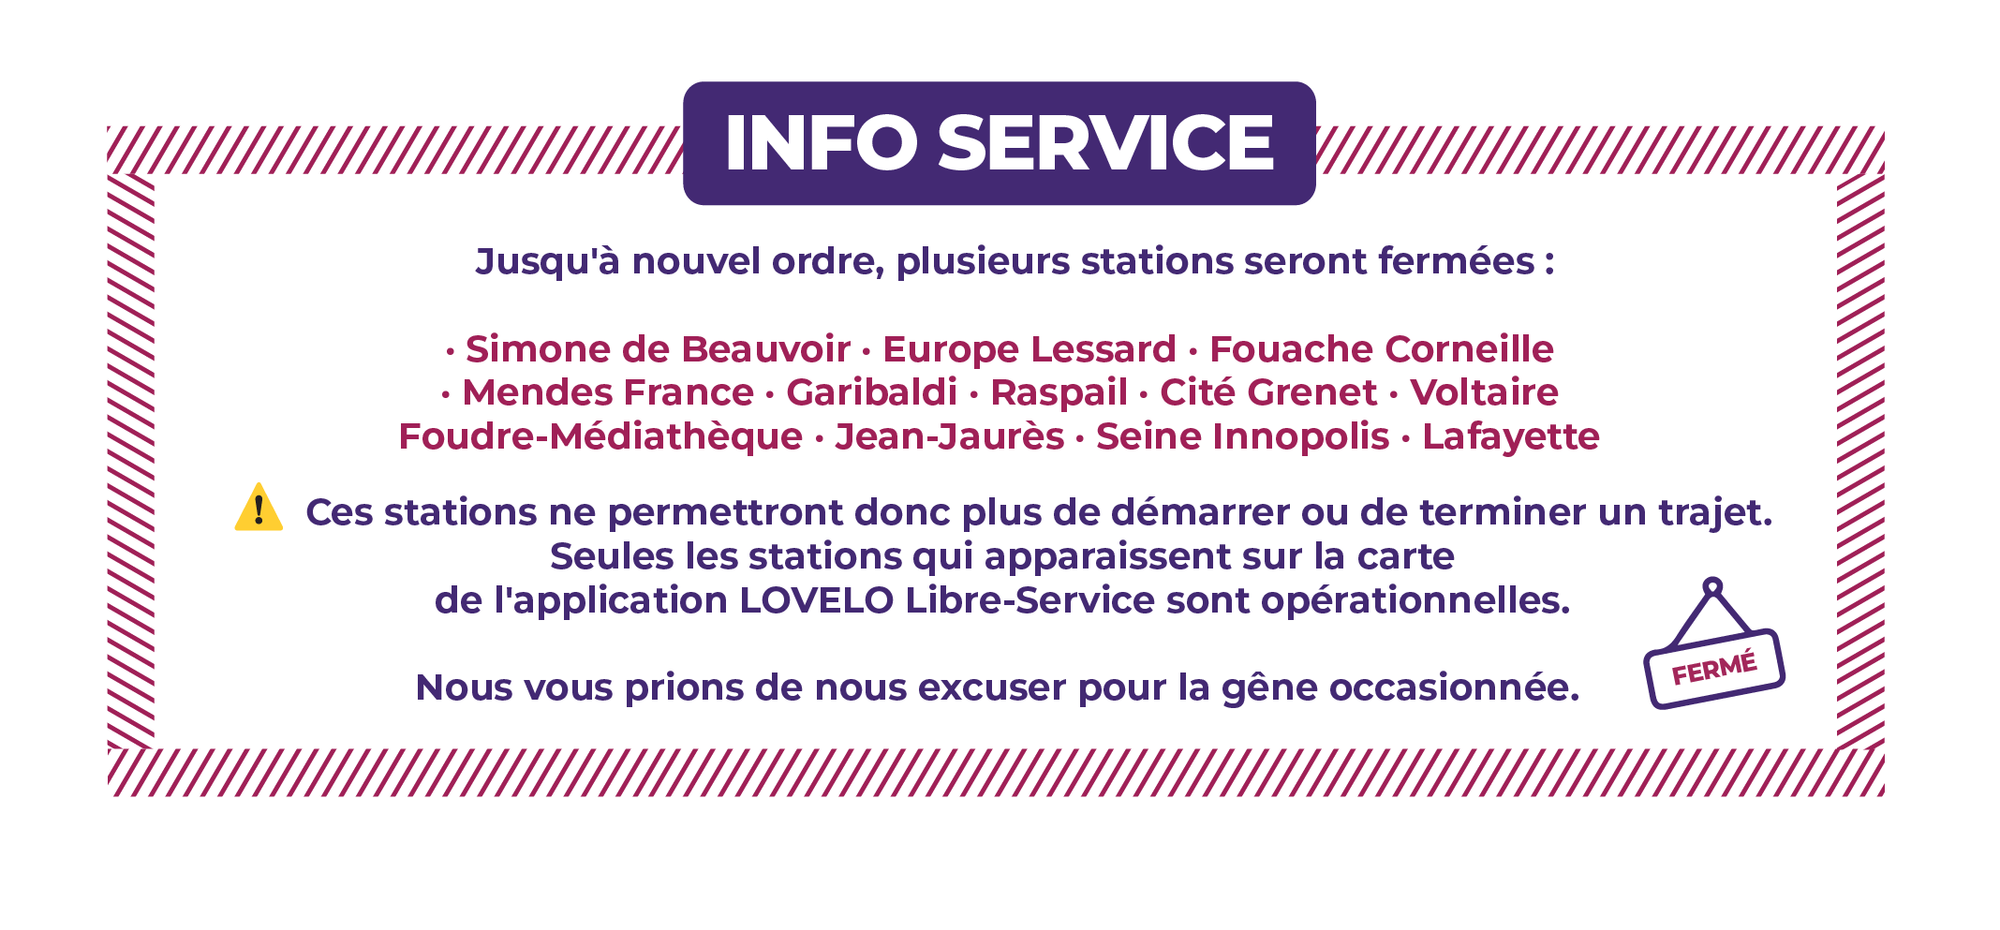 Jusqu'à nouvel ordre, plusieurs stations seront fermées : - SIMONE DE BEAUVOIR - EUROPE LESSARD - FOUACHE CORNEILLE - MENDES FRANCE - GARIBALDI - RASPAIL - CITÉ GRENET - FOUDRE-MEDIATHEQUE - VOLTAIRE - JEAN-JAURES - SEINE INNOPOLIS - LAFAYETTE - FRANÇOIS TRUFFAUT Ces stations ne permettront donc plus de démarrer ou de terminer un trajet. Seules les stations qui apparaissent sur la carte de l'application LOVÉLO Libre-Service sont opérationnelles. Nous vous prions de nous excuser pour la gêne occasionnée.